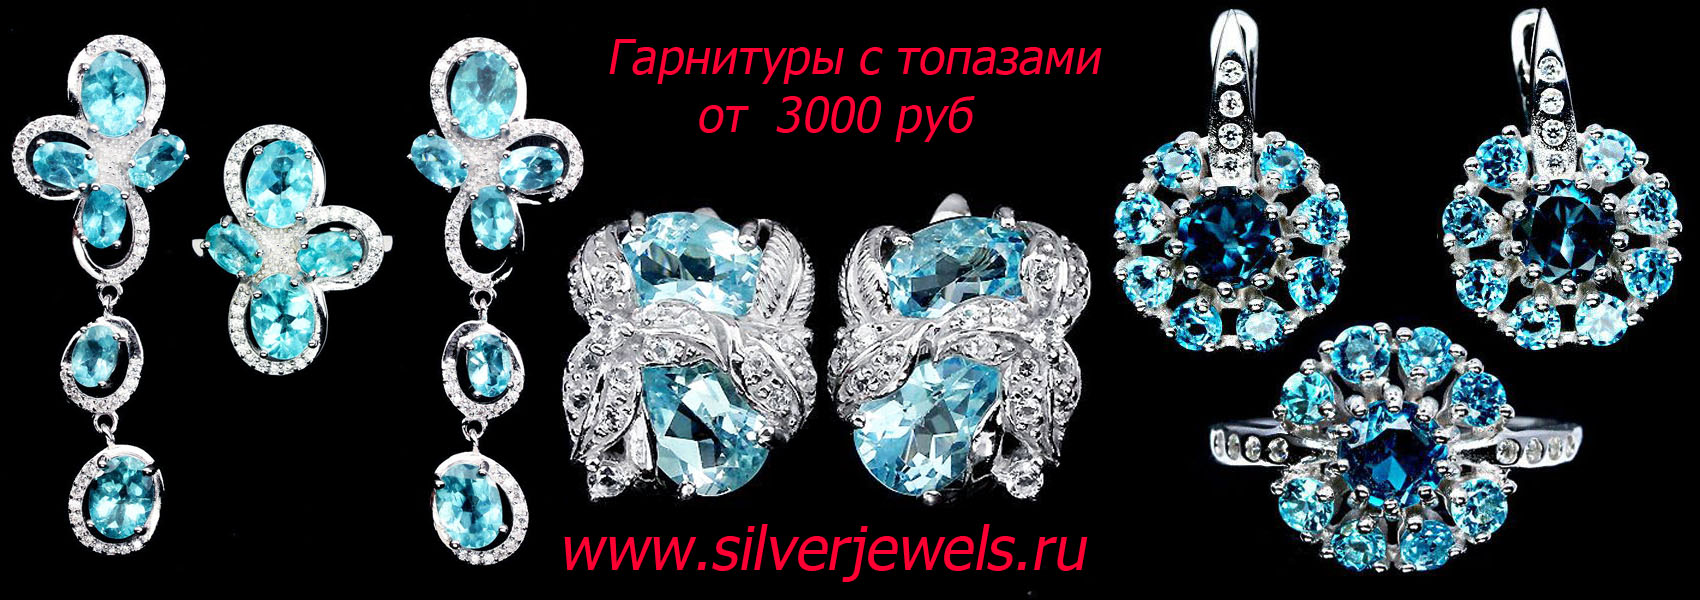 серебряные украшения silverjewels.ru изделия с натуральными камнями